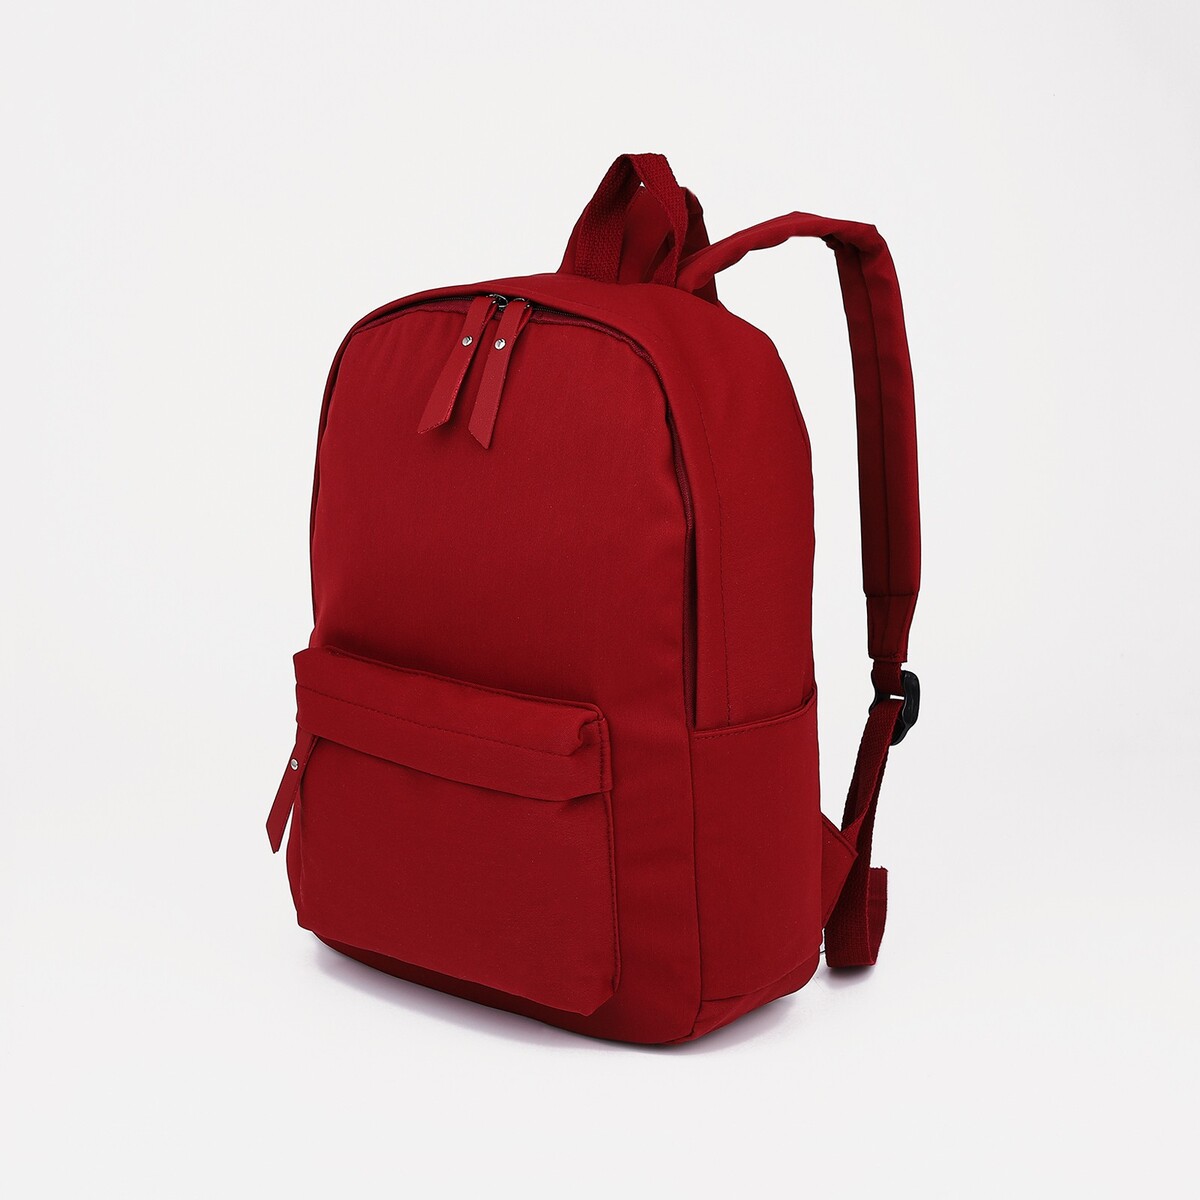 Рюкзак молодежный из текстиля, 4 кармана, цвет бордовый рюкзак классики 28 11 38 см 1 отд на молнии 4 н кармана бордовый